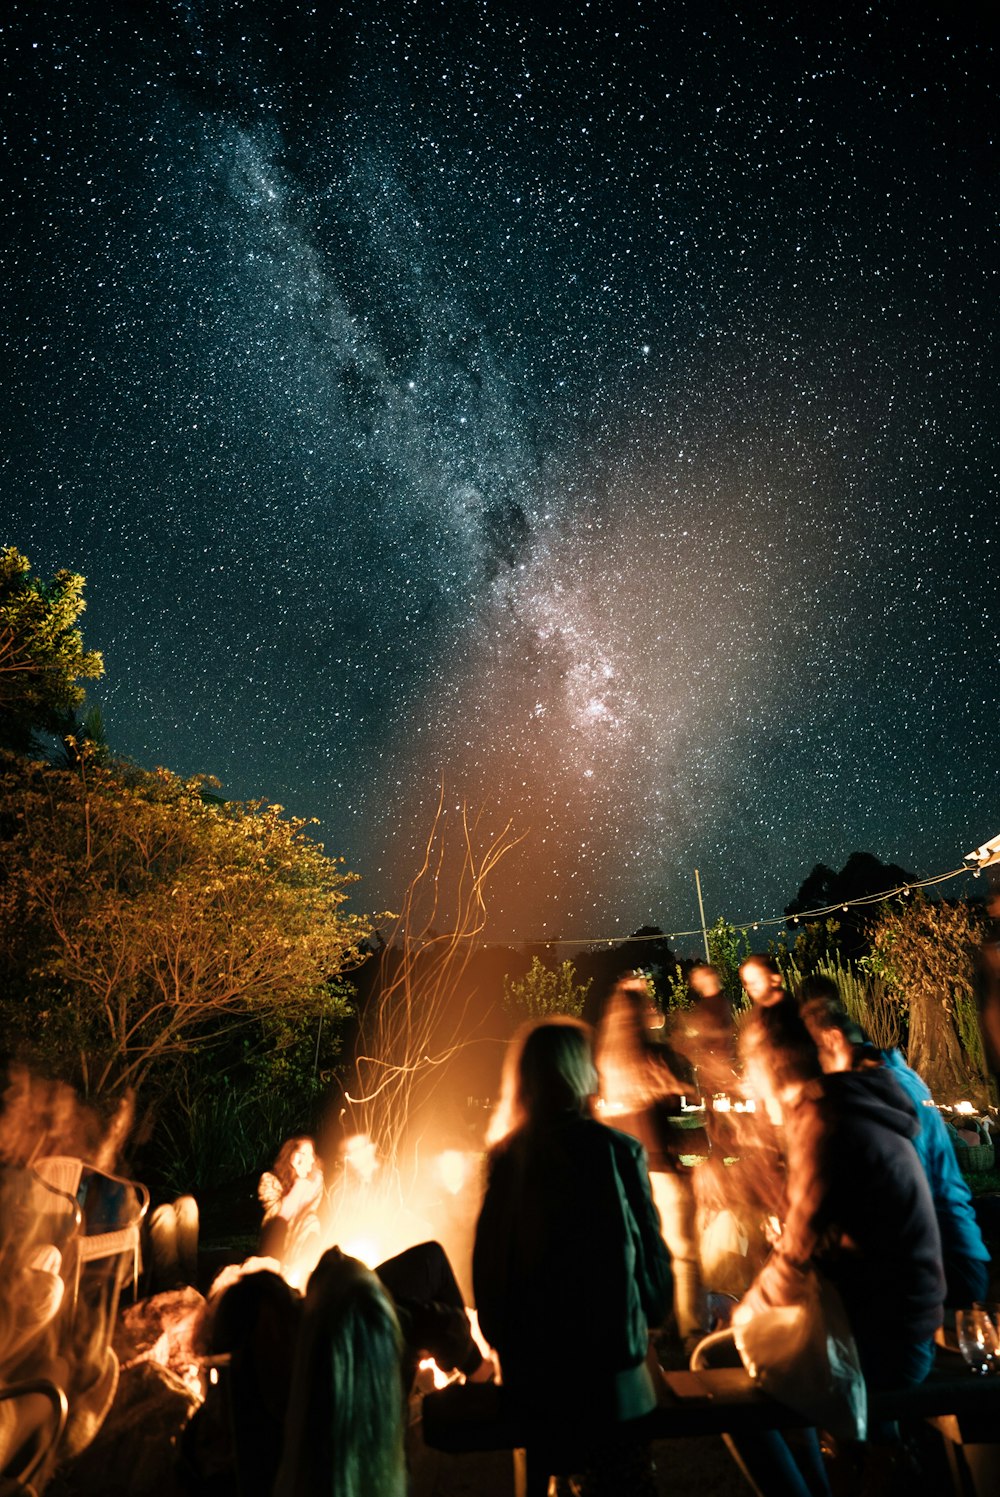 Un grupo de personas sentadas alrededor de una fogata bajo un cielo nocturno lleno de estrellas